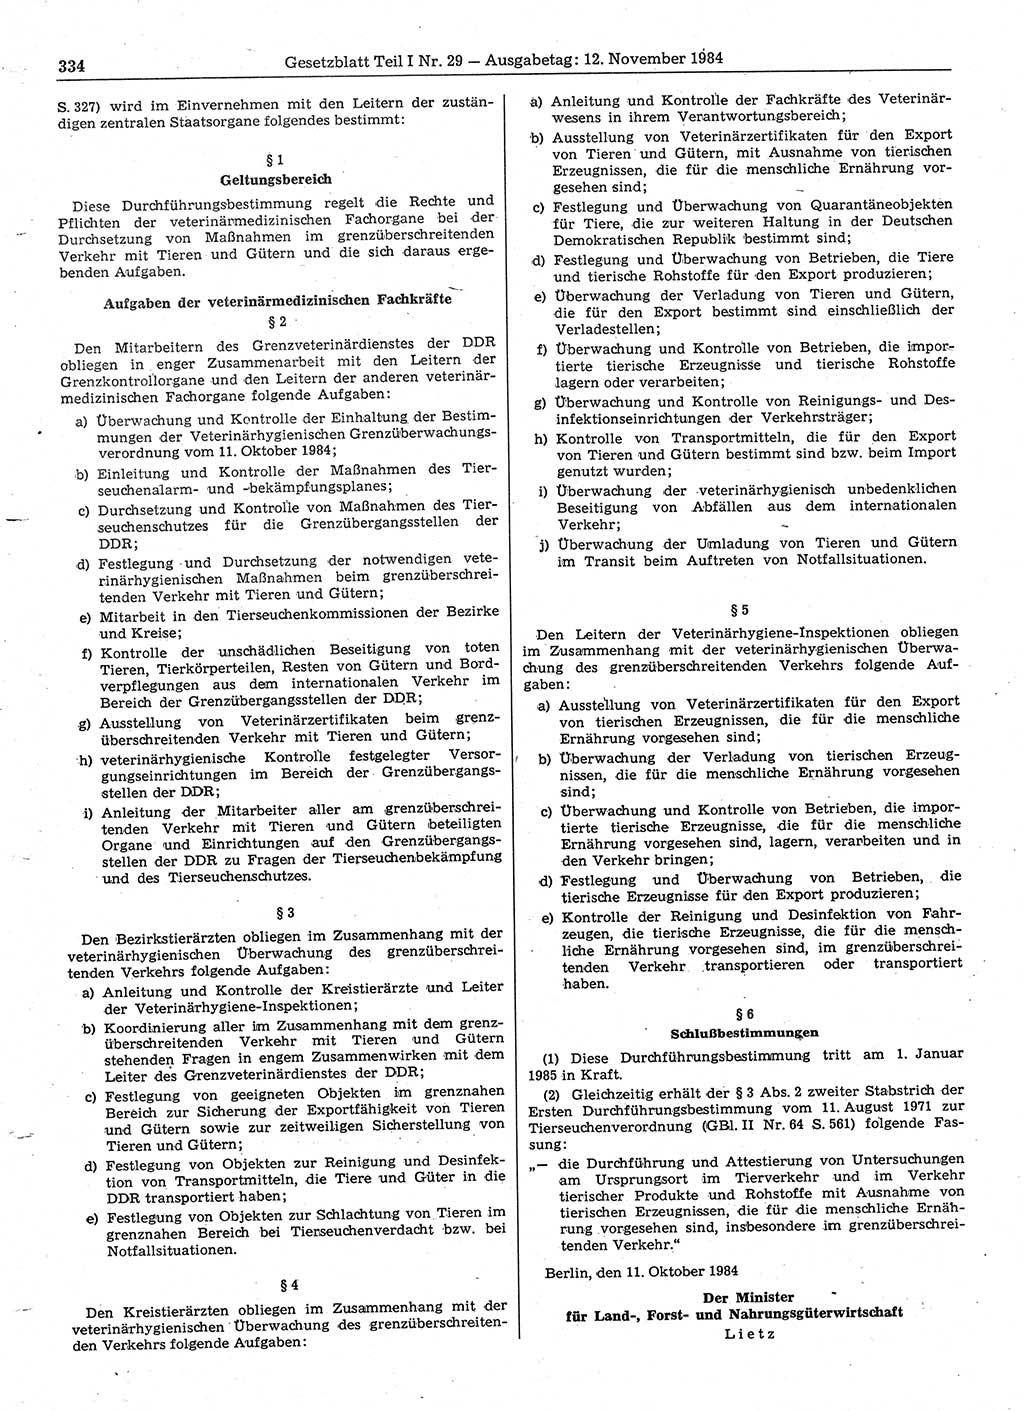 Gesetzblatt (GBl.) der Deutschen Demokratischen Republik (DDR) Teil Ⅰ 1984, Seite 334 (GBl. DDR Ⅰ 1984, S. 334)